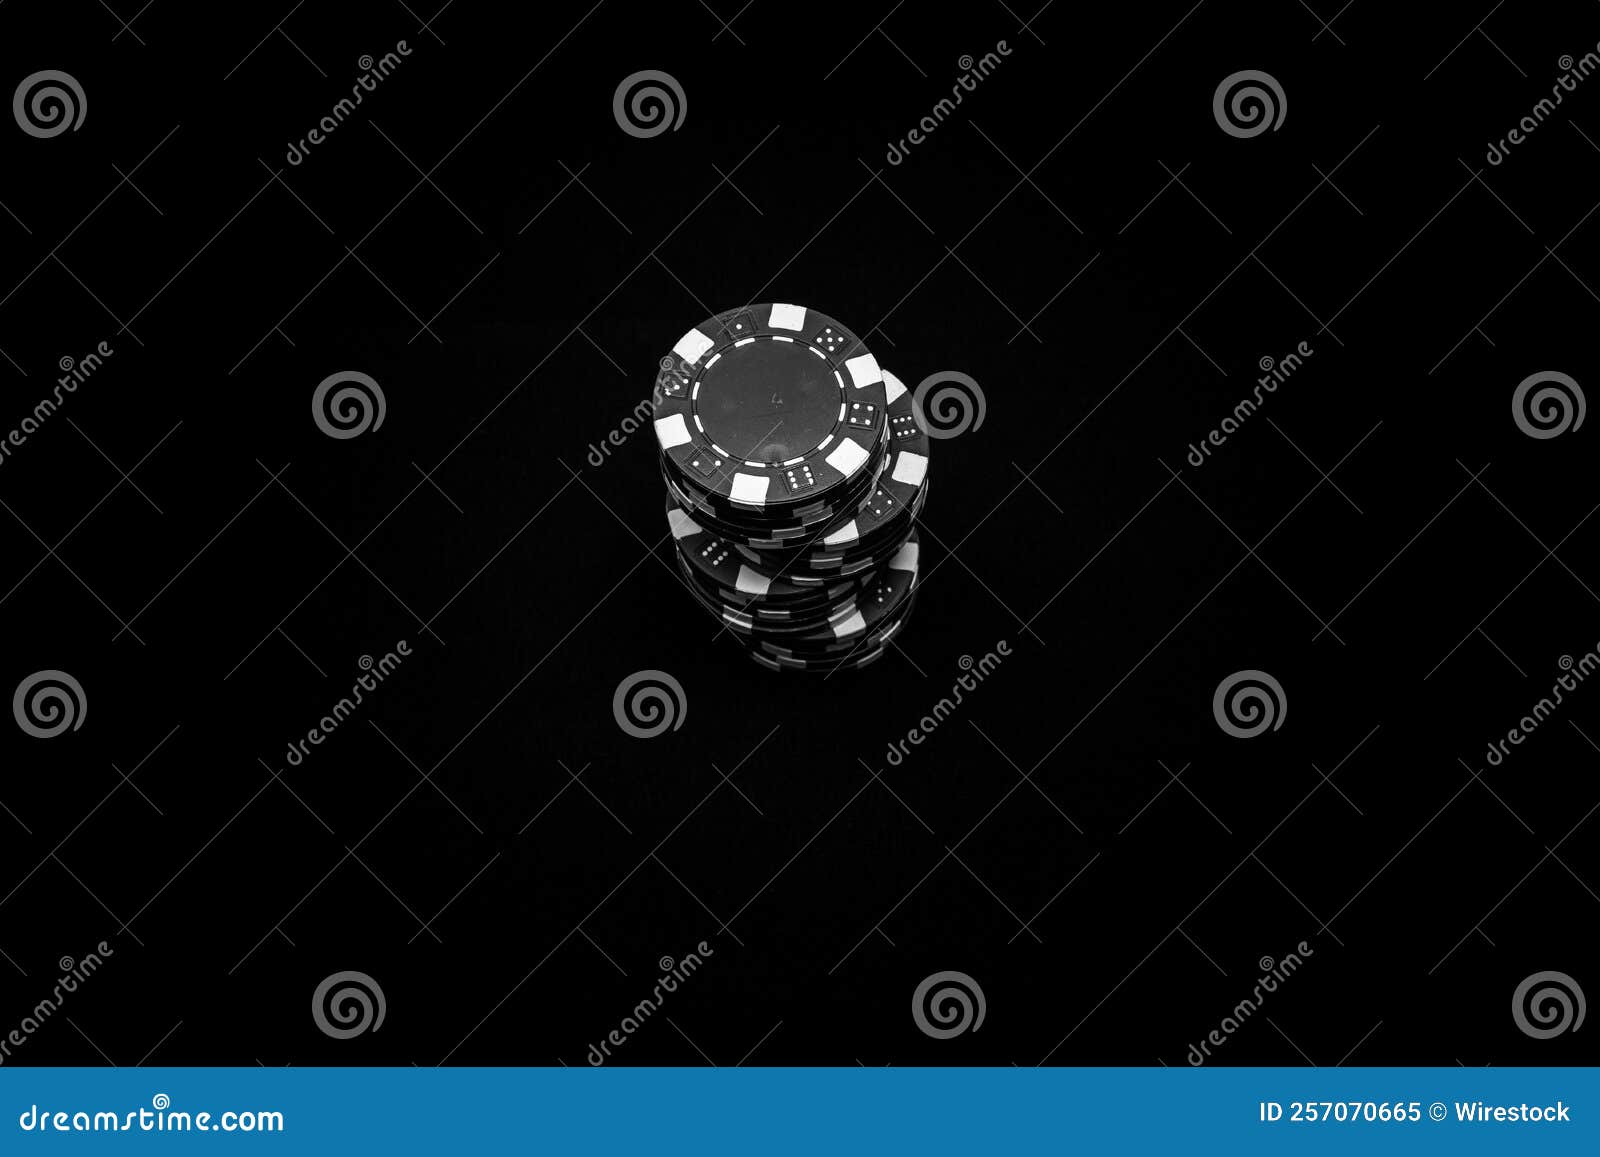 Capture D'écran En Niveaux De Gris D'une Pile De Puces De Poker Image stock  - Image du dessus, puces: 257070665